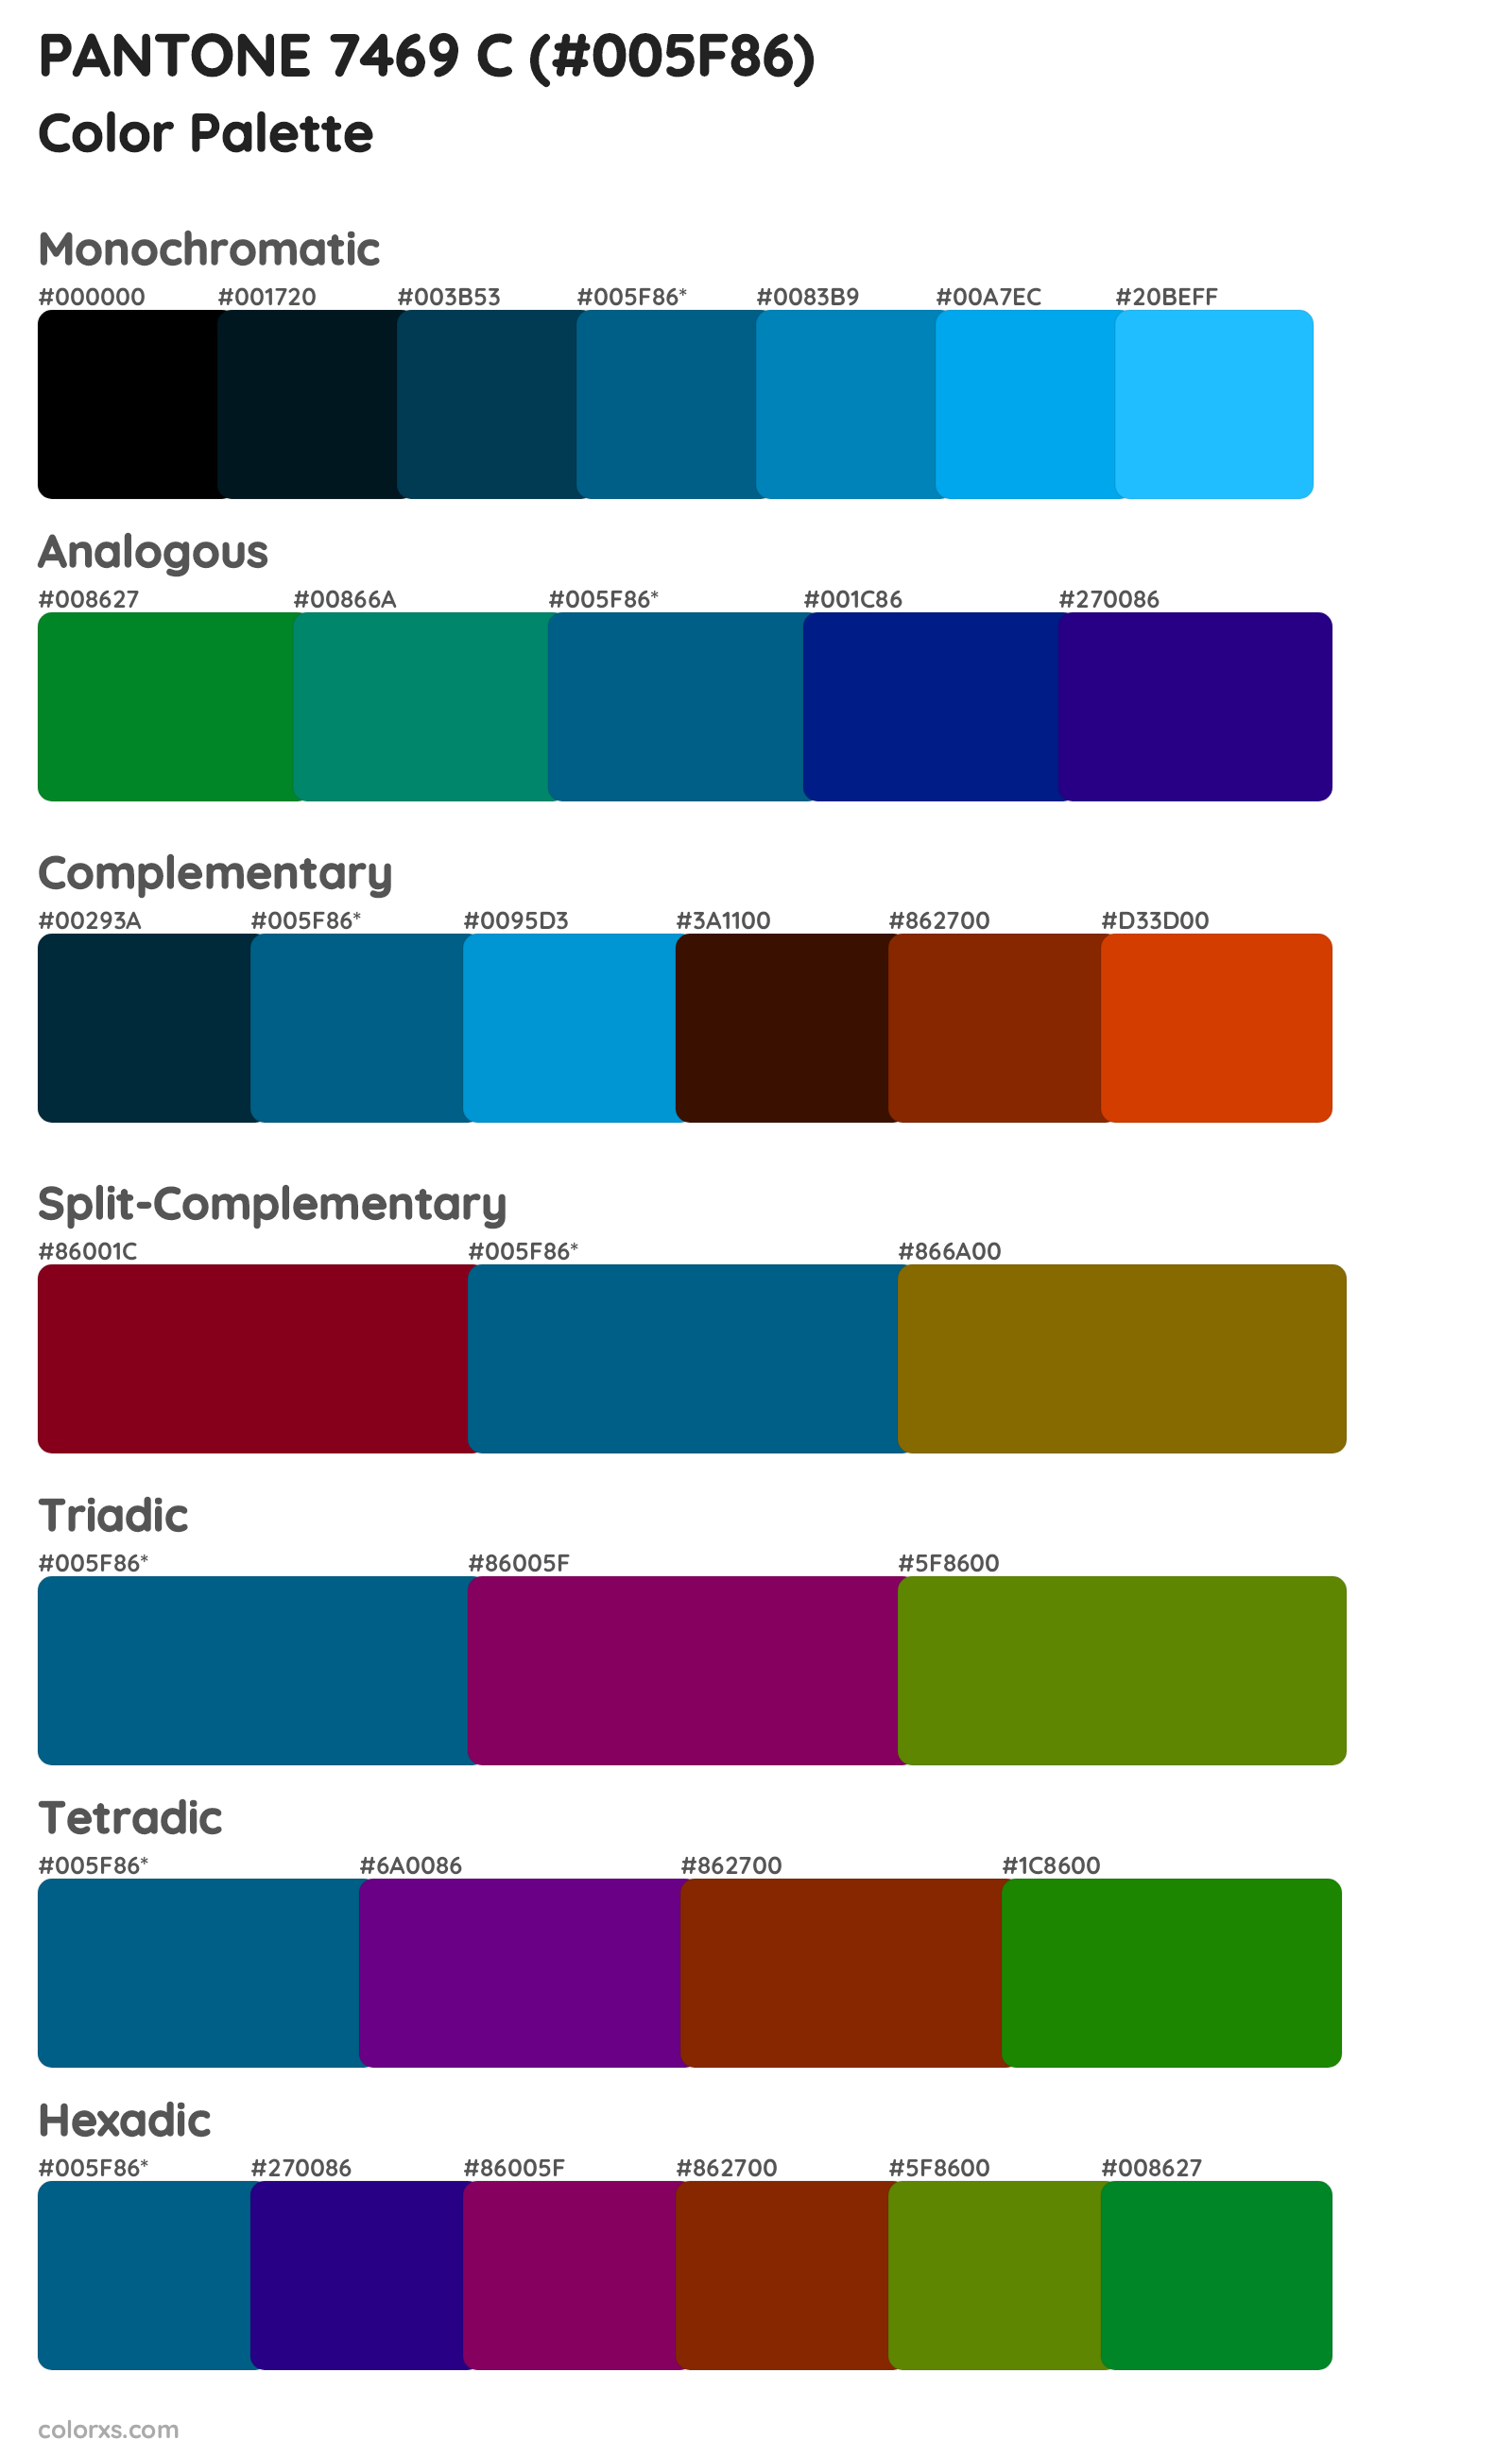 PANTONE 7469 C Color Scheme Palettes